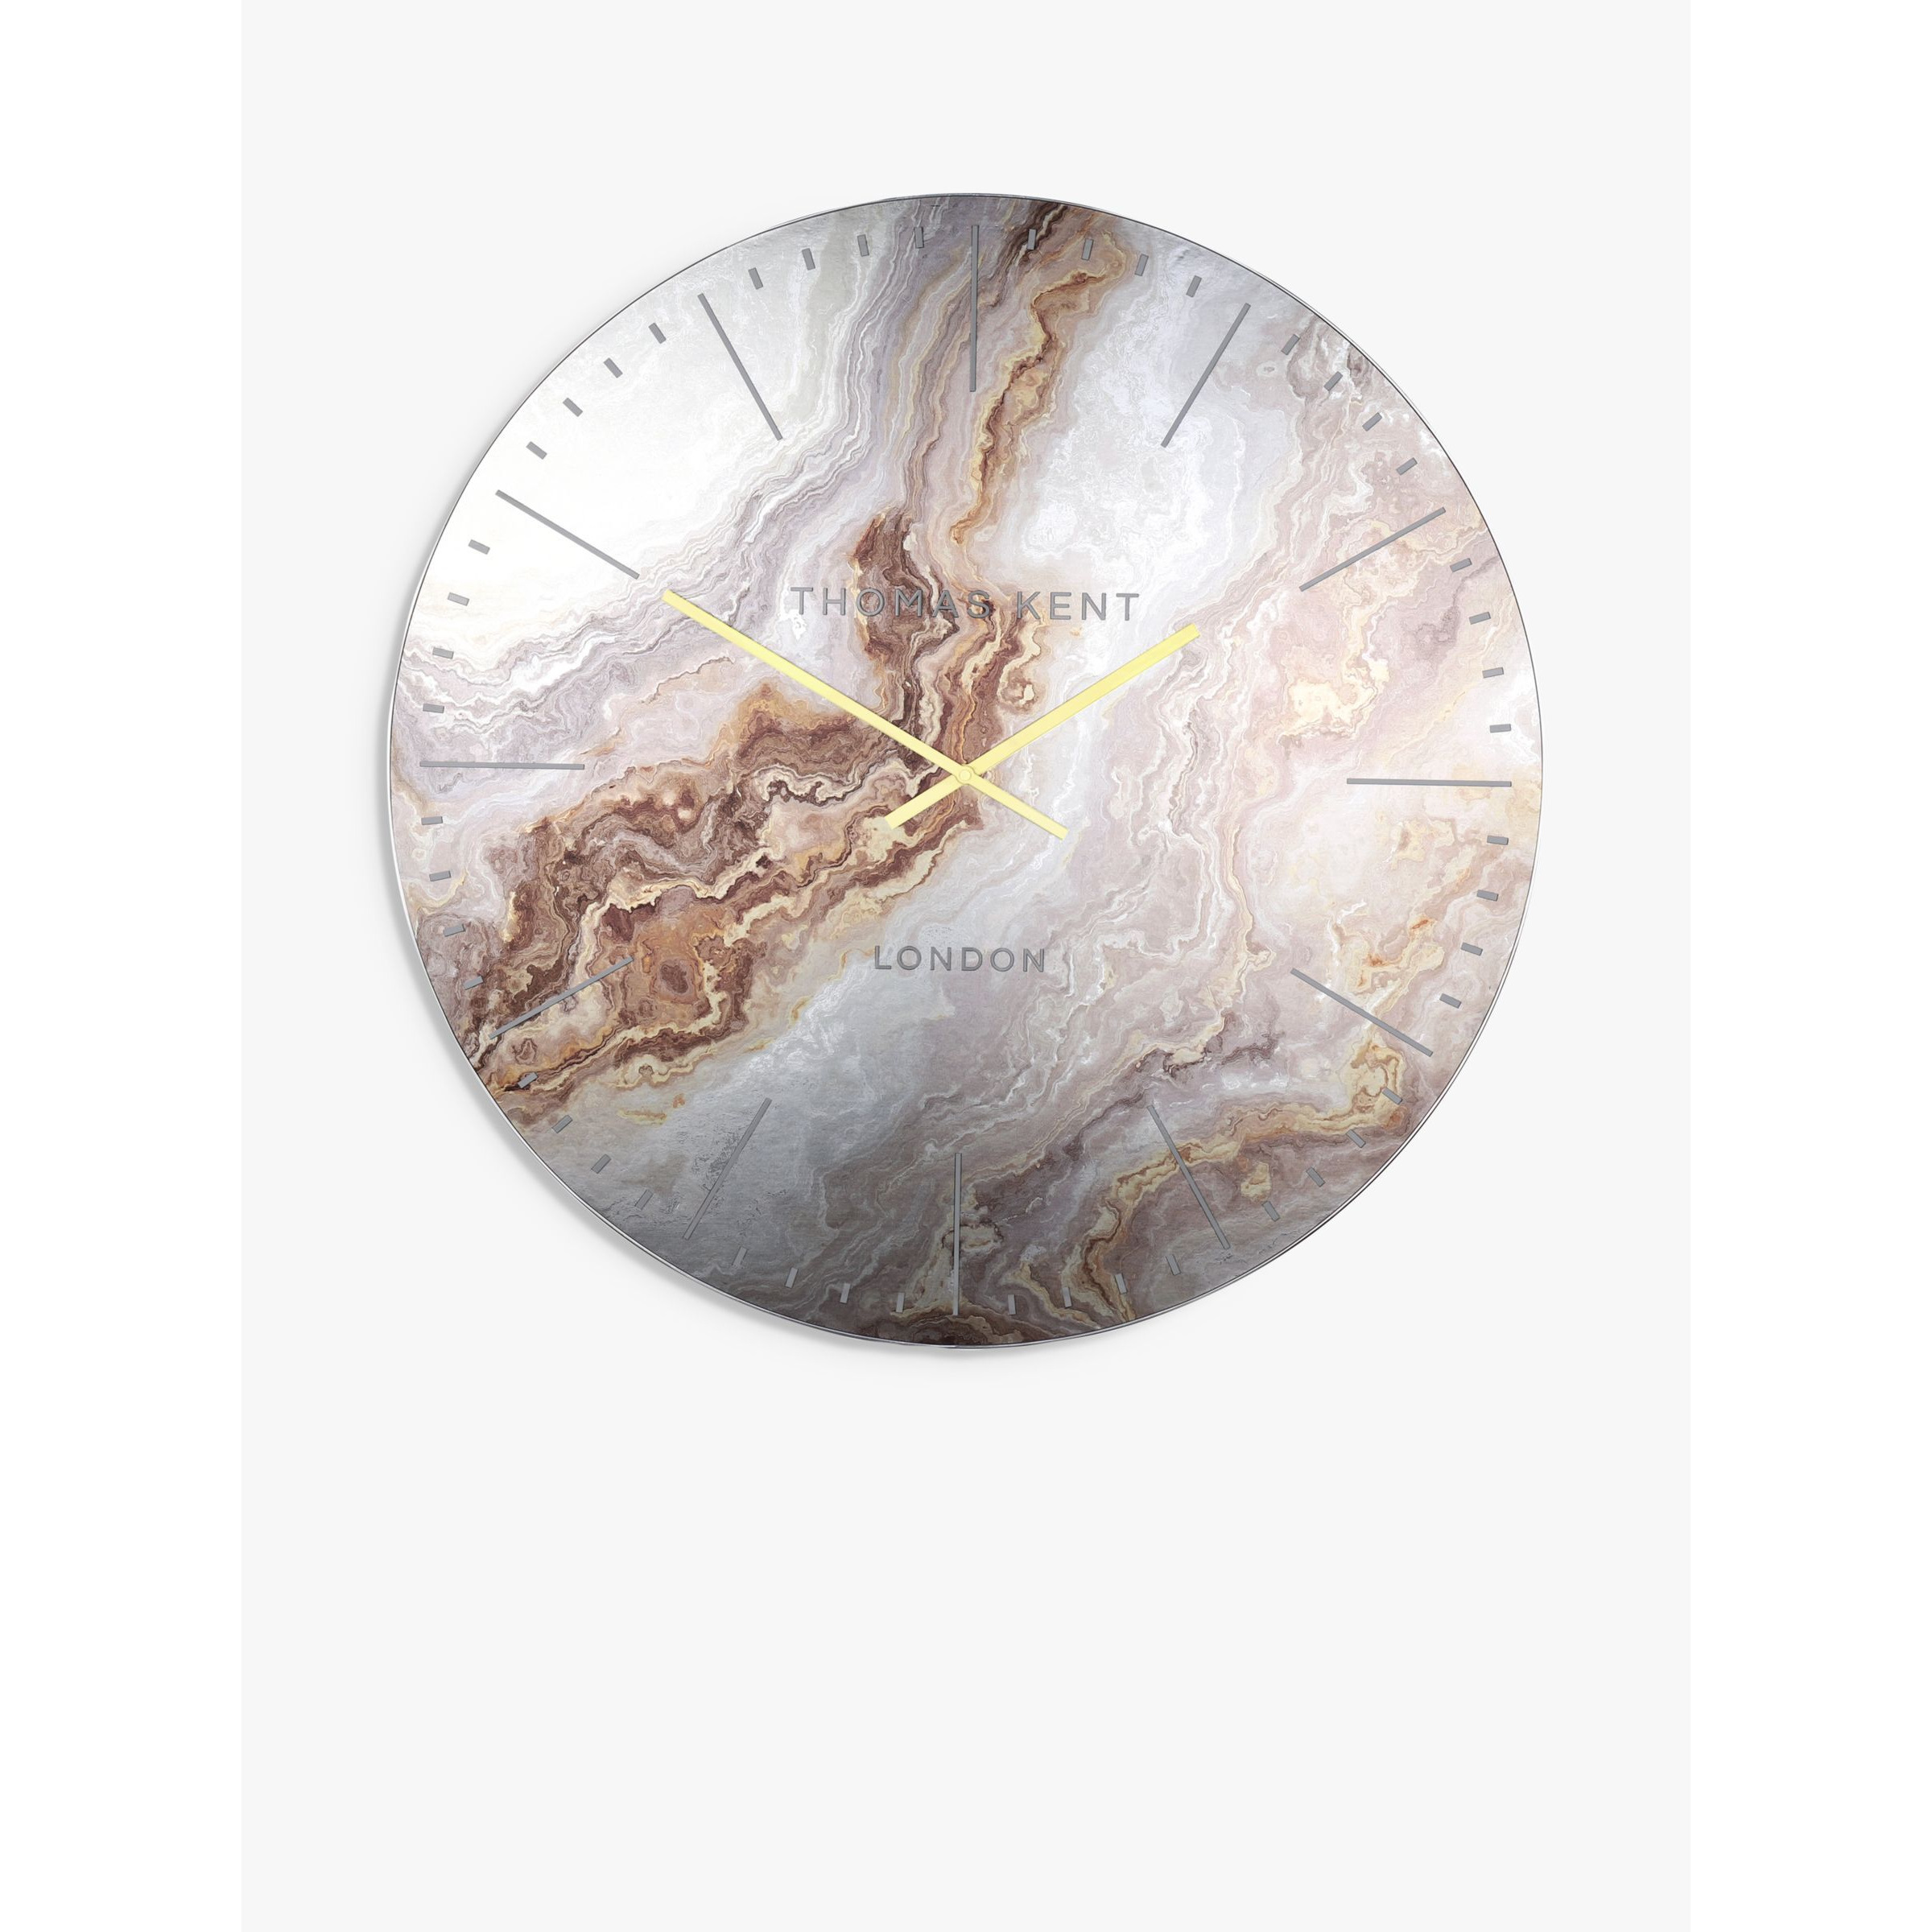 Thomas Kent Oyster Analogue Wall Clock, 66cm - image 1